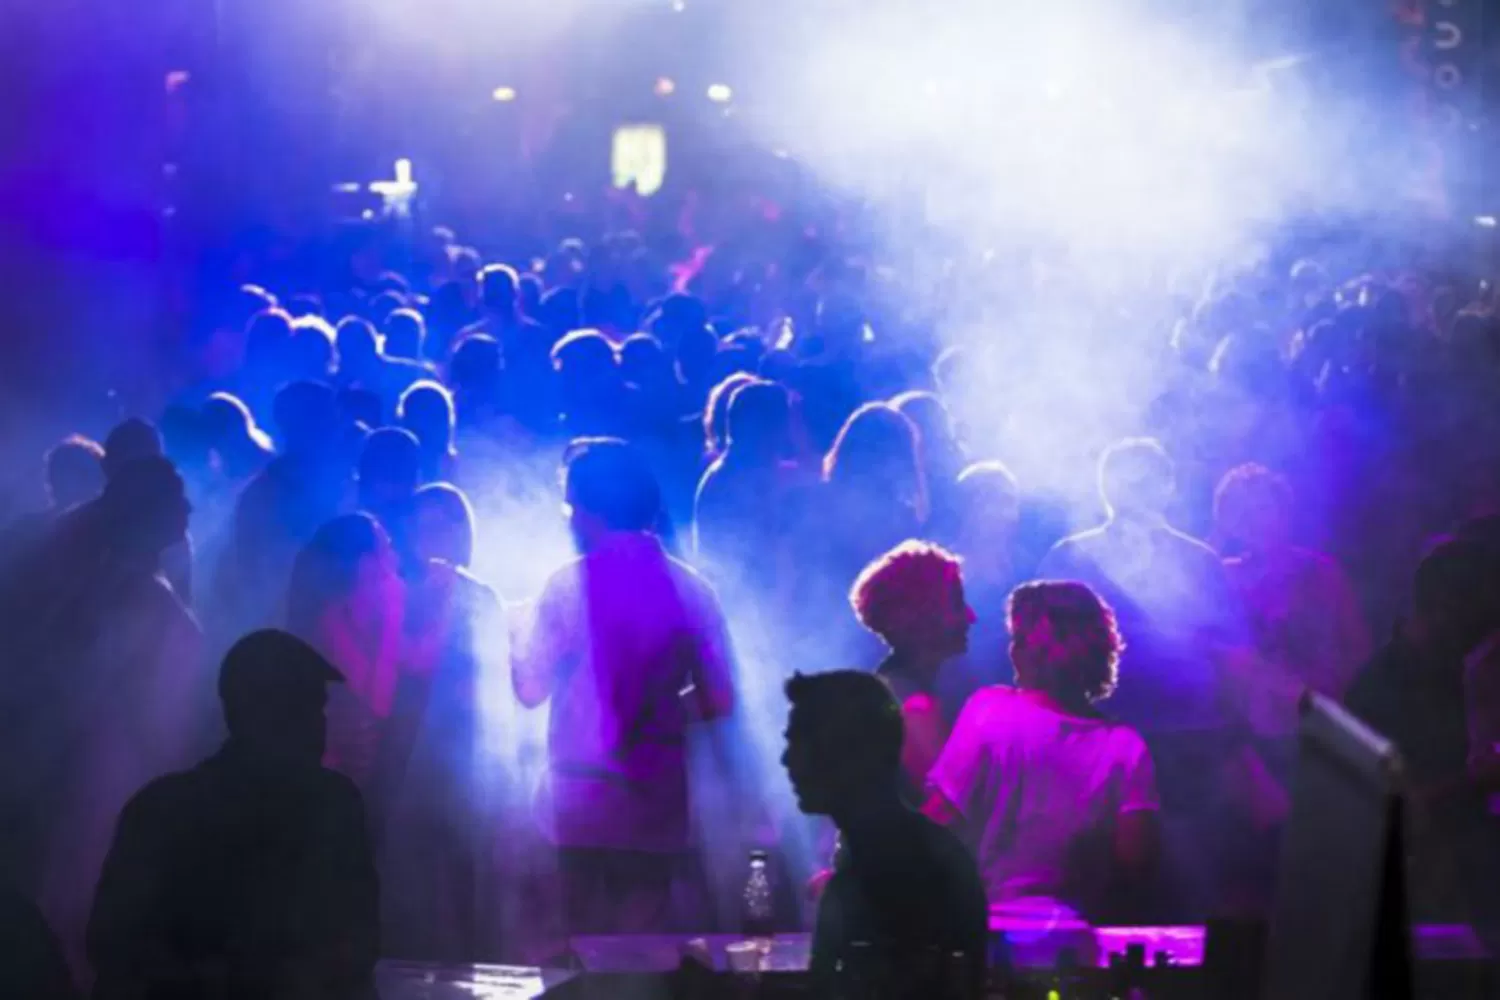 La violencia en las discotecas fue tema de debate en Tucumán